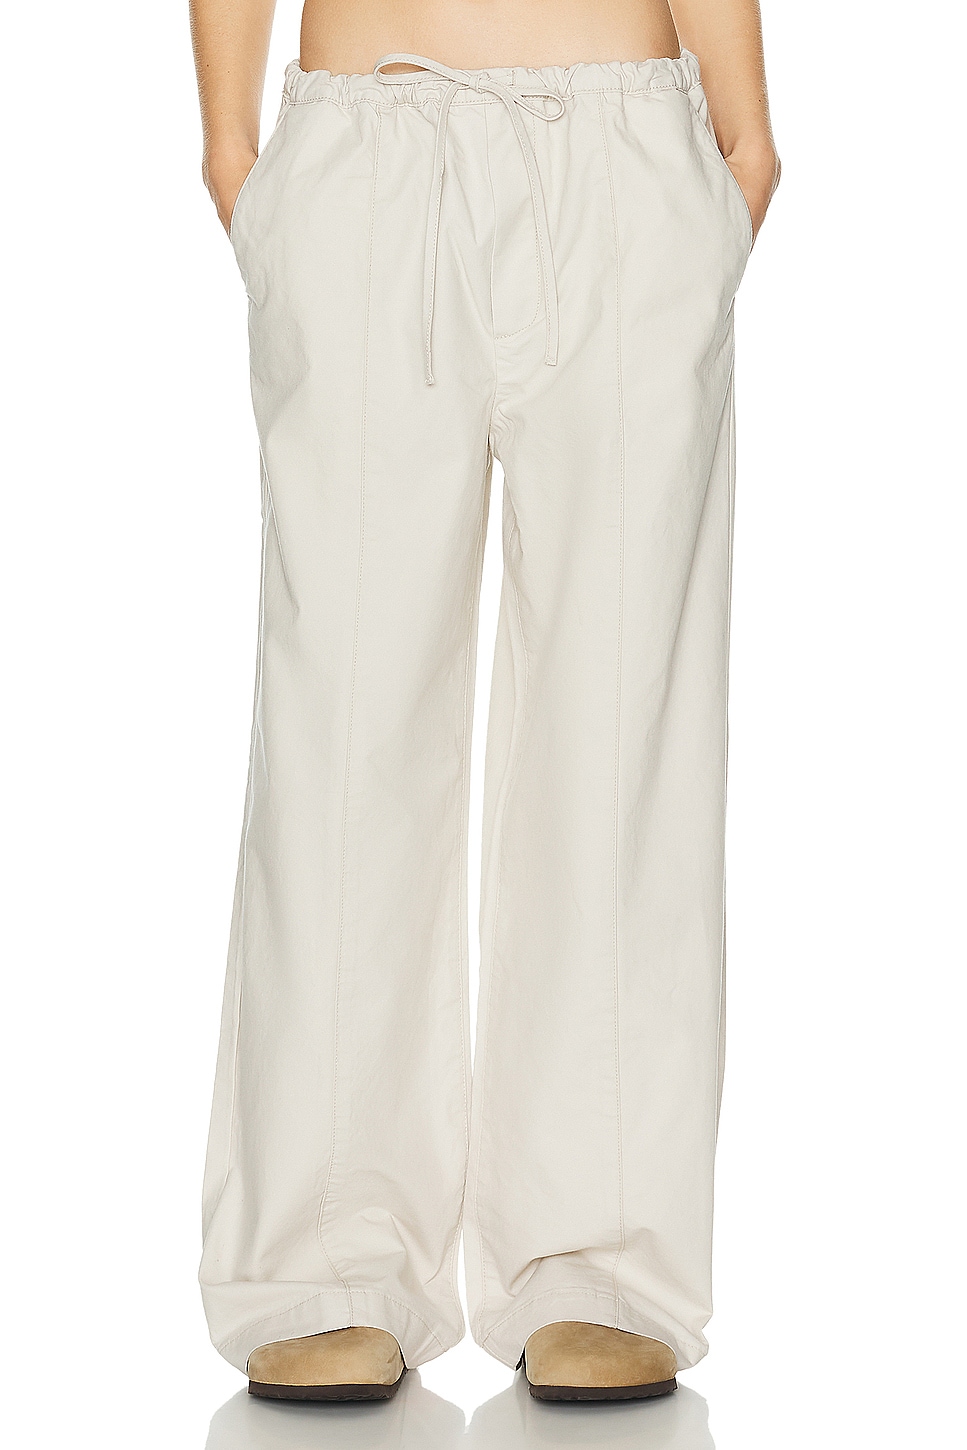 Image 1 of Helsa Workwear Drawcord Pants in Ecru